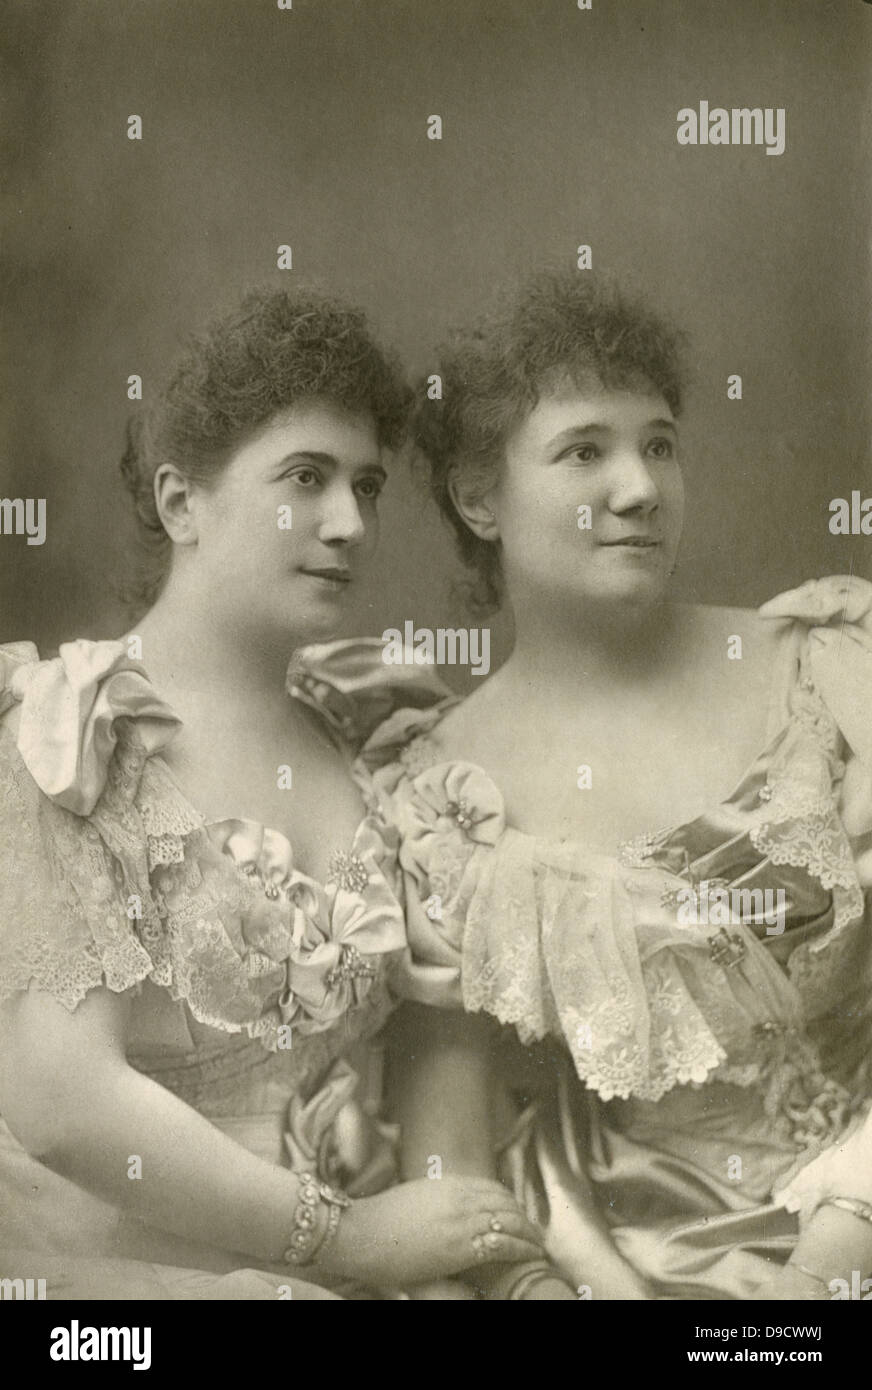 Giulia (1866-1940) Mezzosopran und Sofia Ravogli (1865-1910) Sopran, c 1891. Sie am Covent Garden im Jahr 1891 erschien, Guilia sang die Titelrolle in Glucks Orfeo zu großem Beifall. Stockfoto